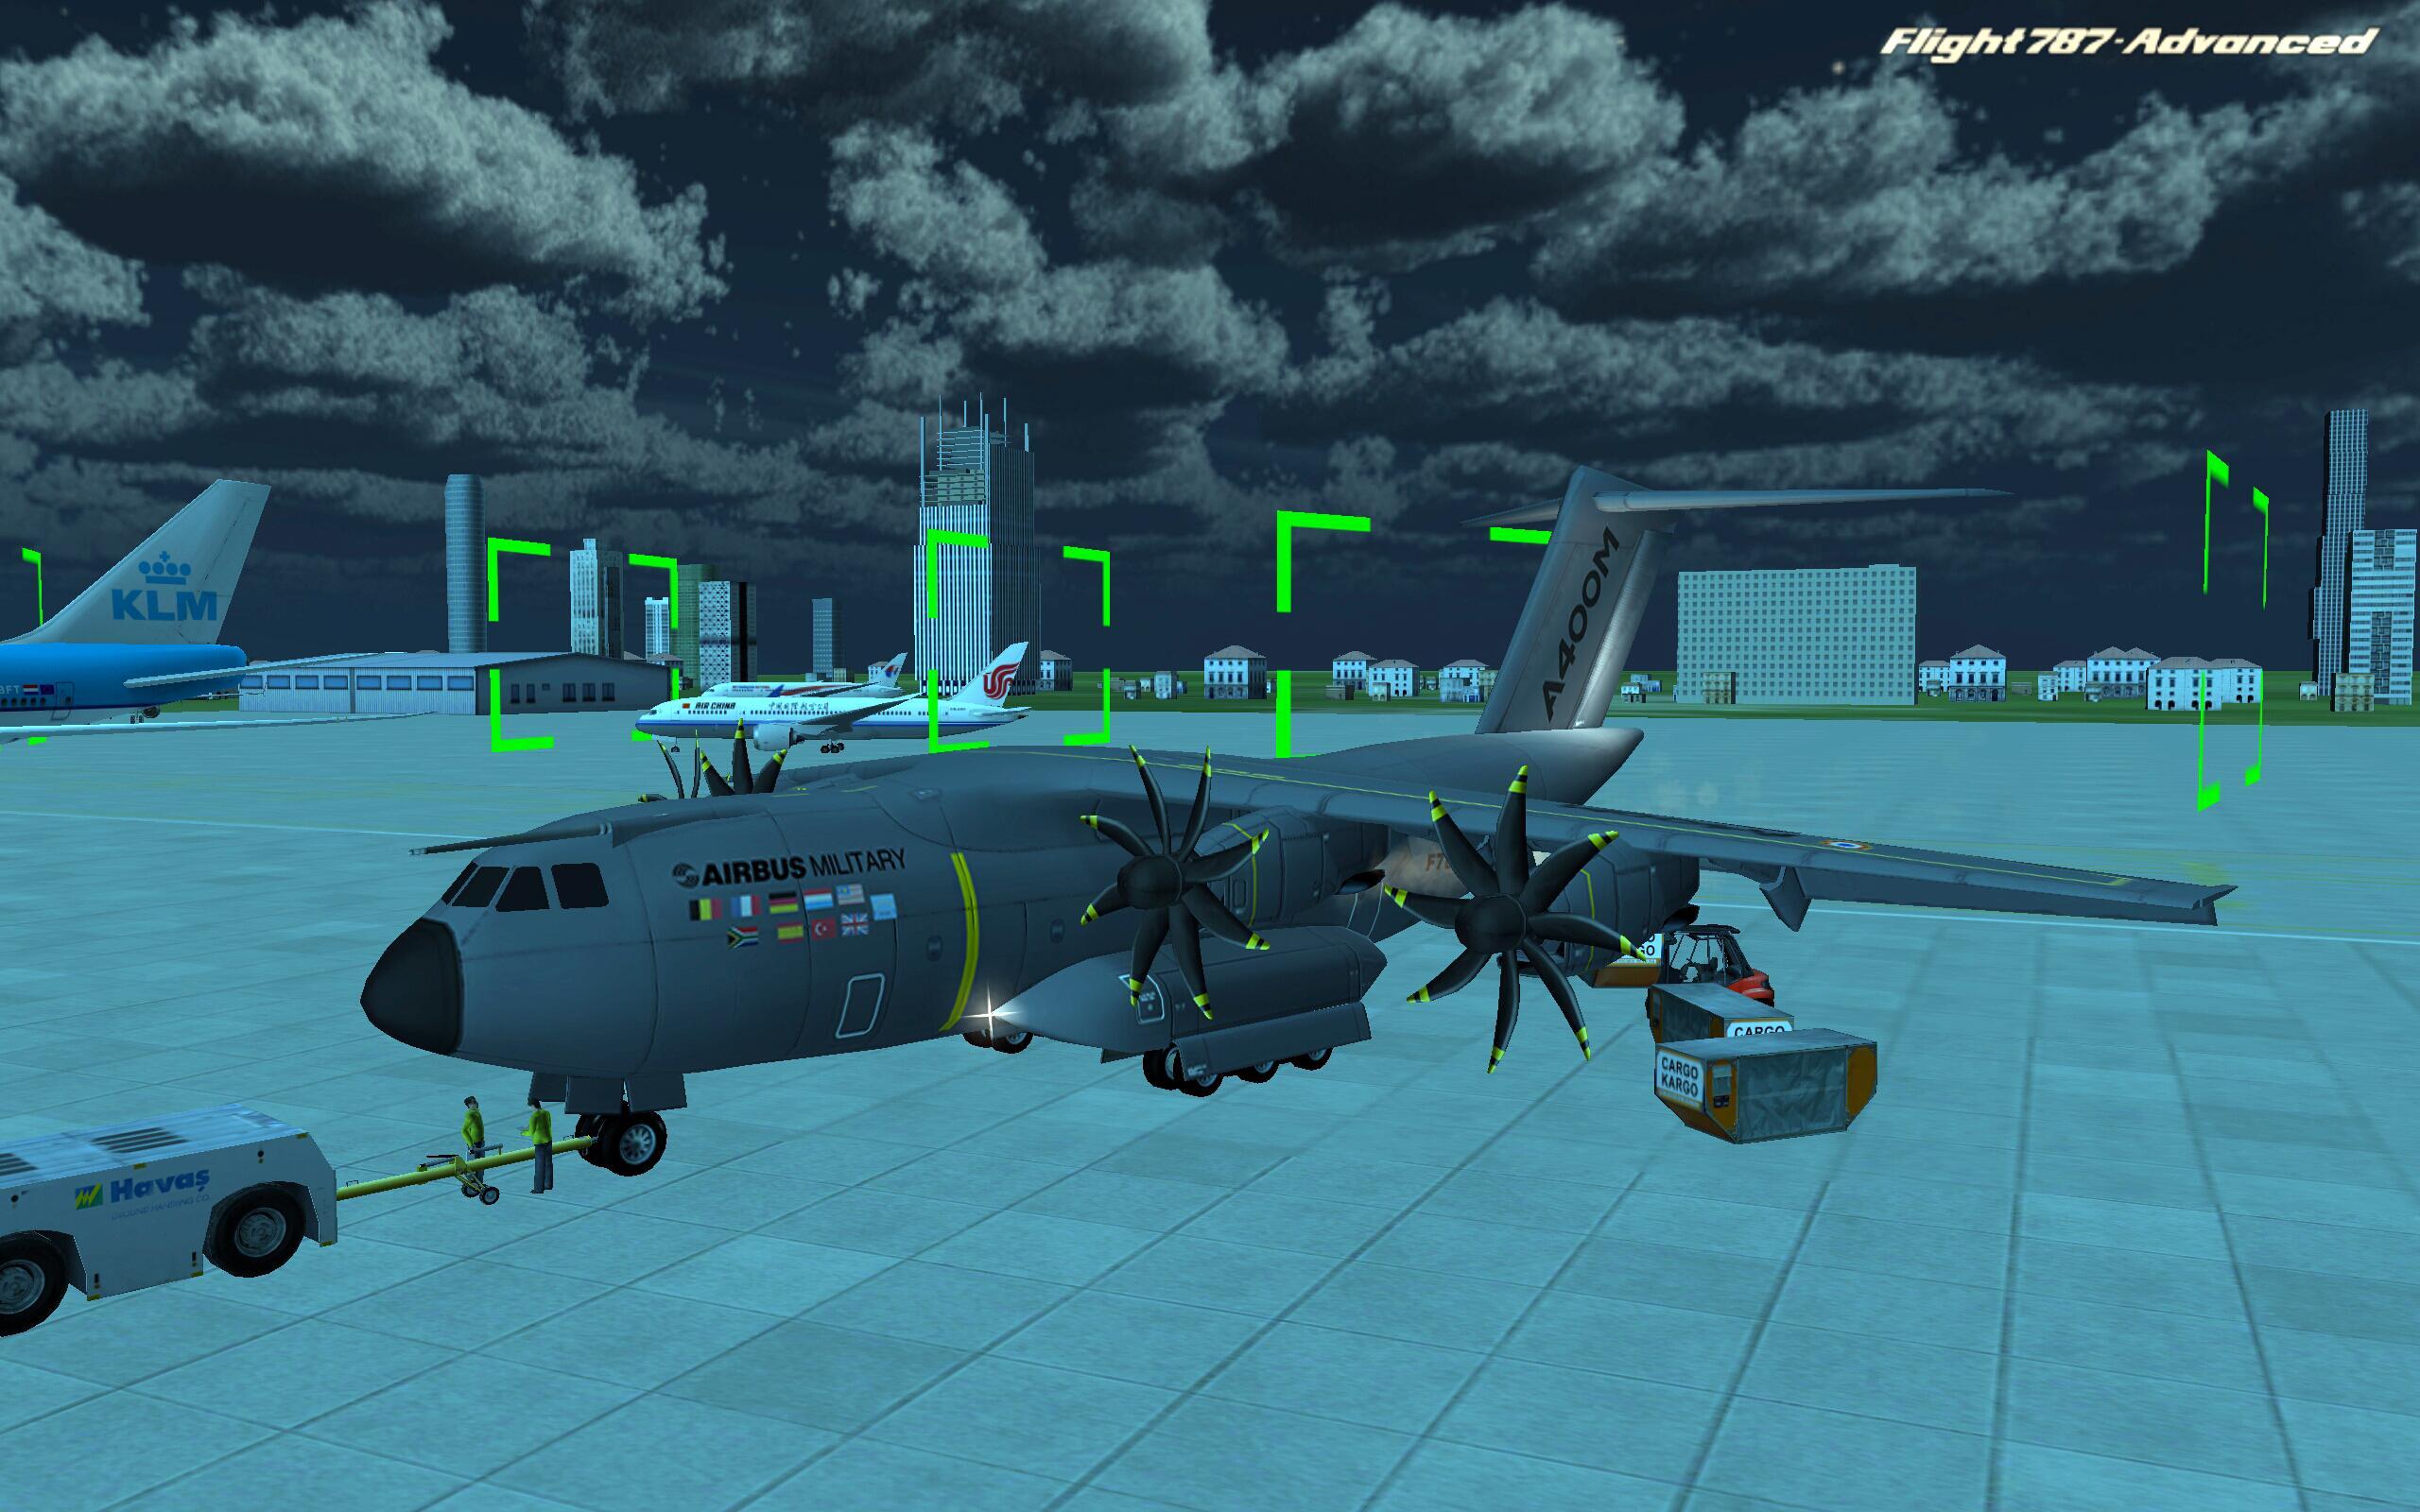 Игра где можно летать на самолетах. Flight 787 - Advanced. Игры про самолеты. Симулятор военного самолета. Игры про самолёты на андроид.